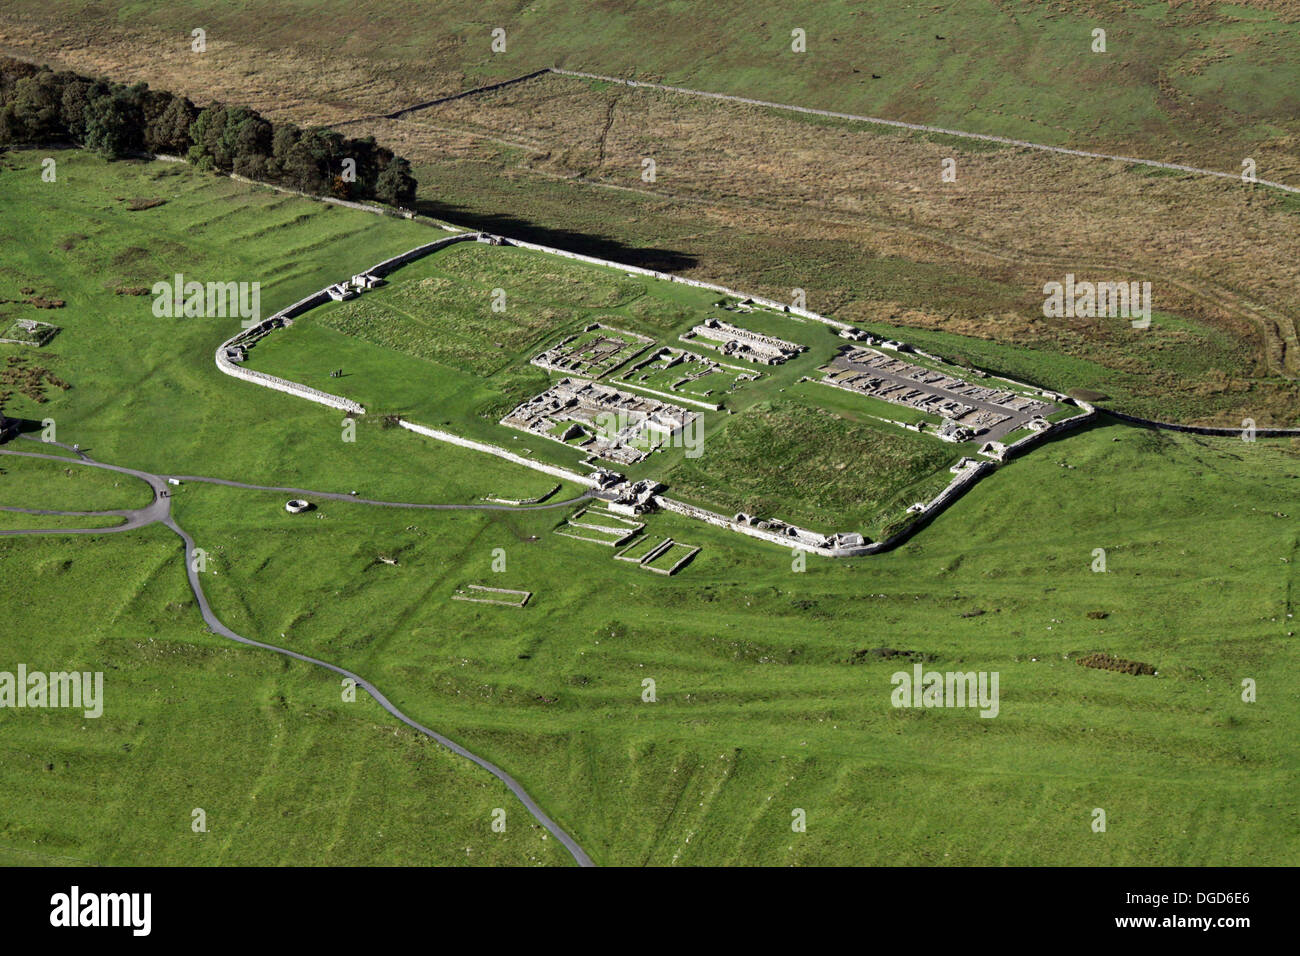 Vista aerea di Housesteads Fort, il più completo di Roman Fort in esistenza, il vallo di Adriano nei pressi di Hexham in Northumberland Foto Stock